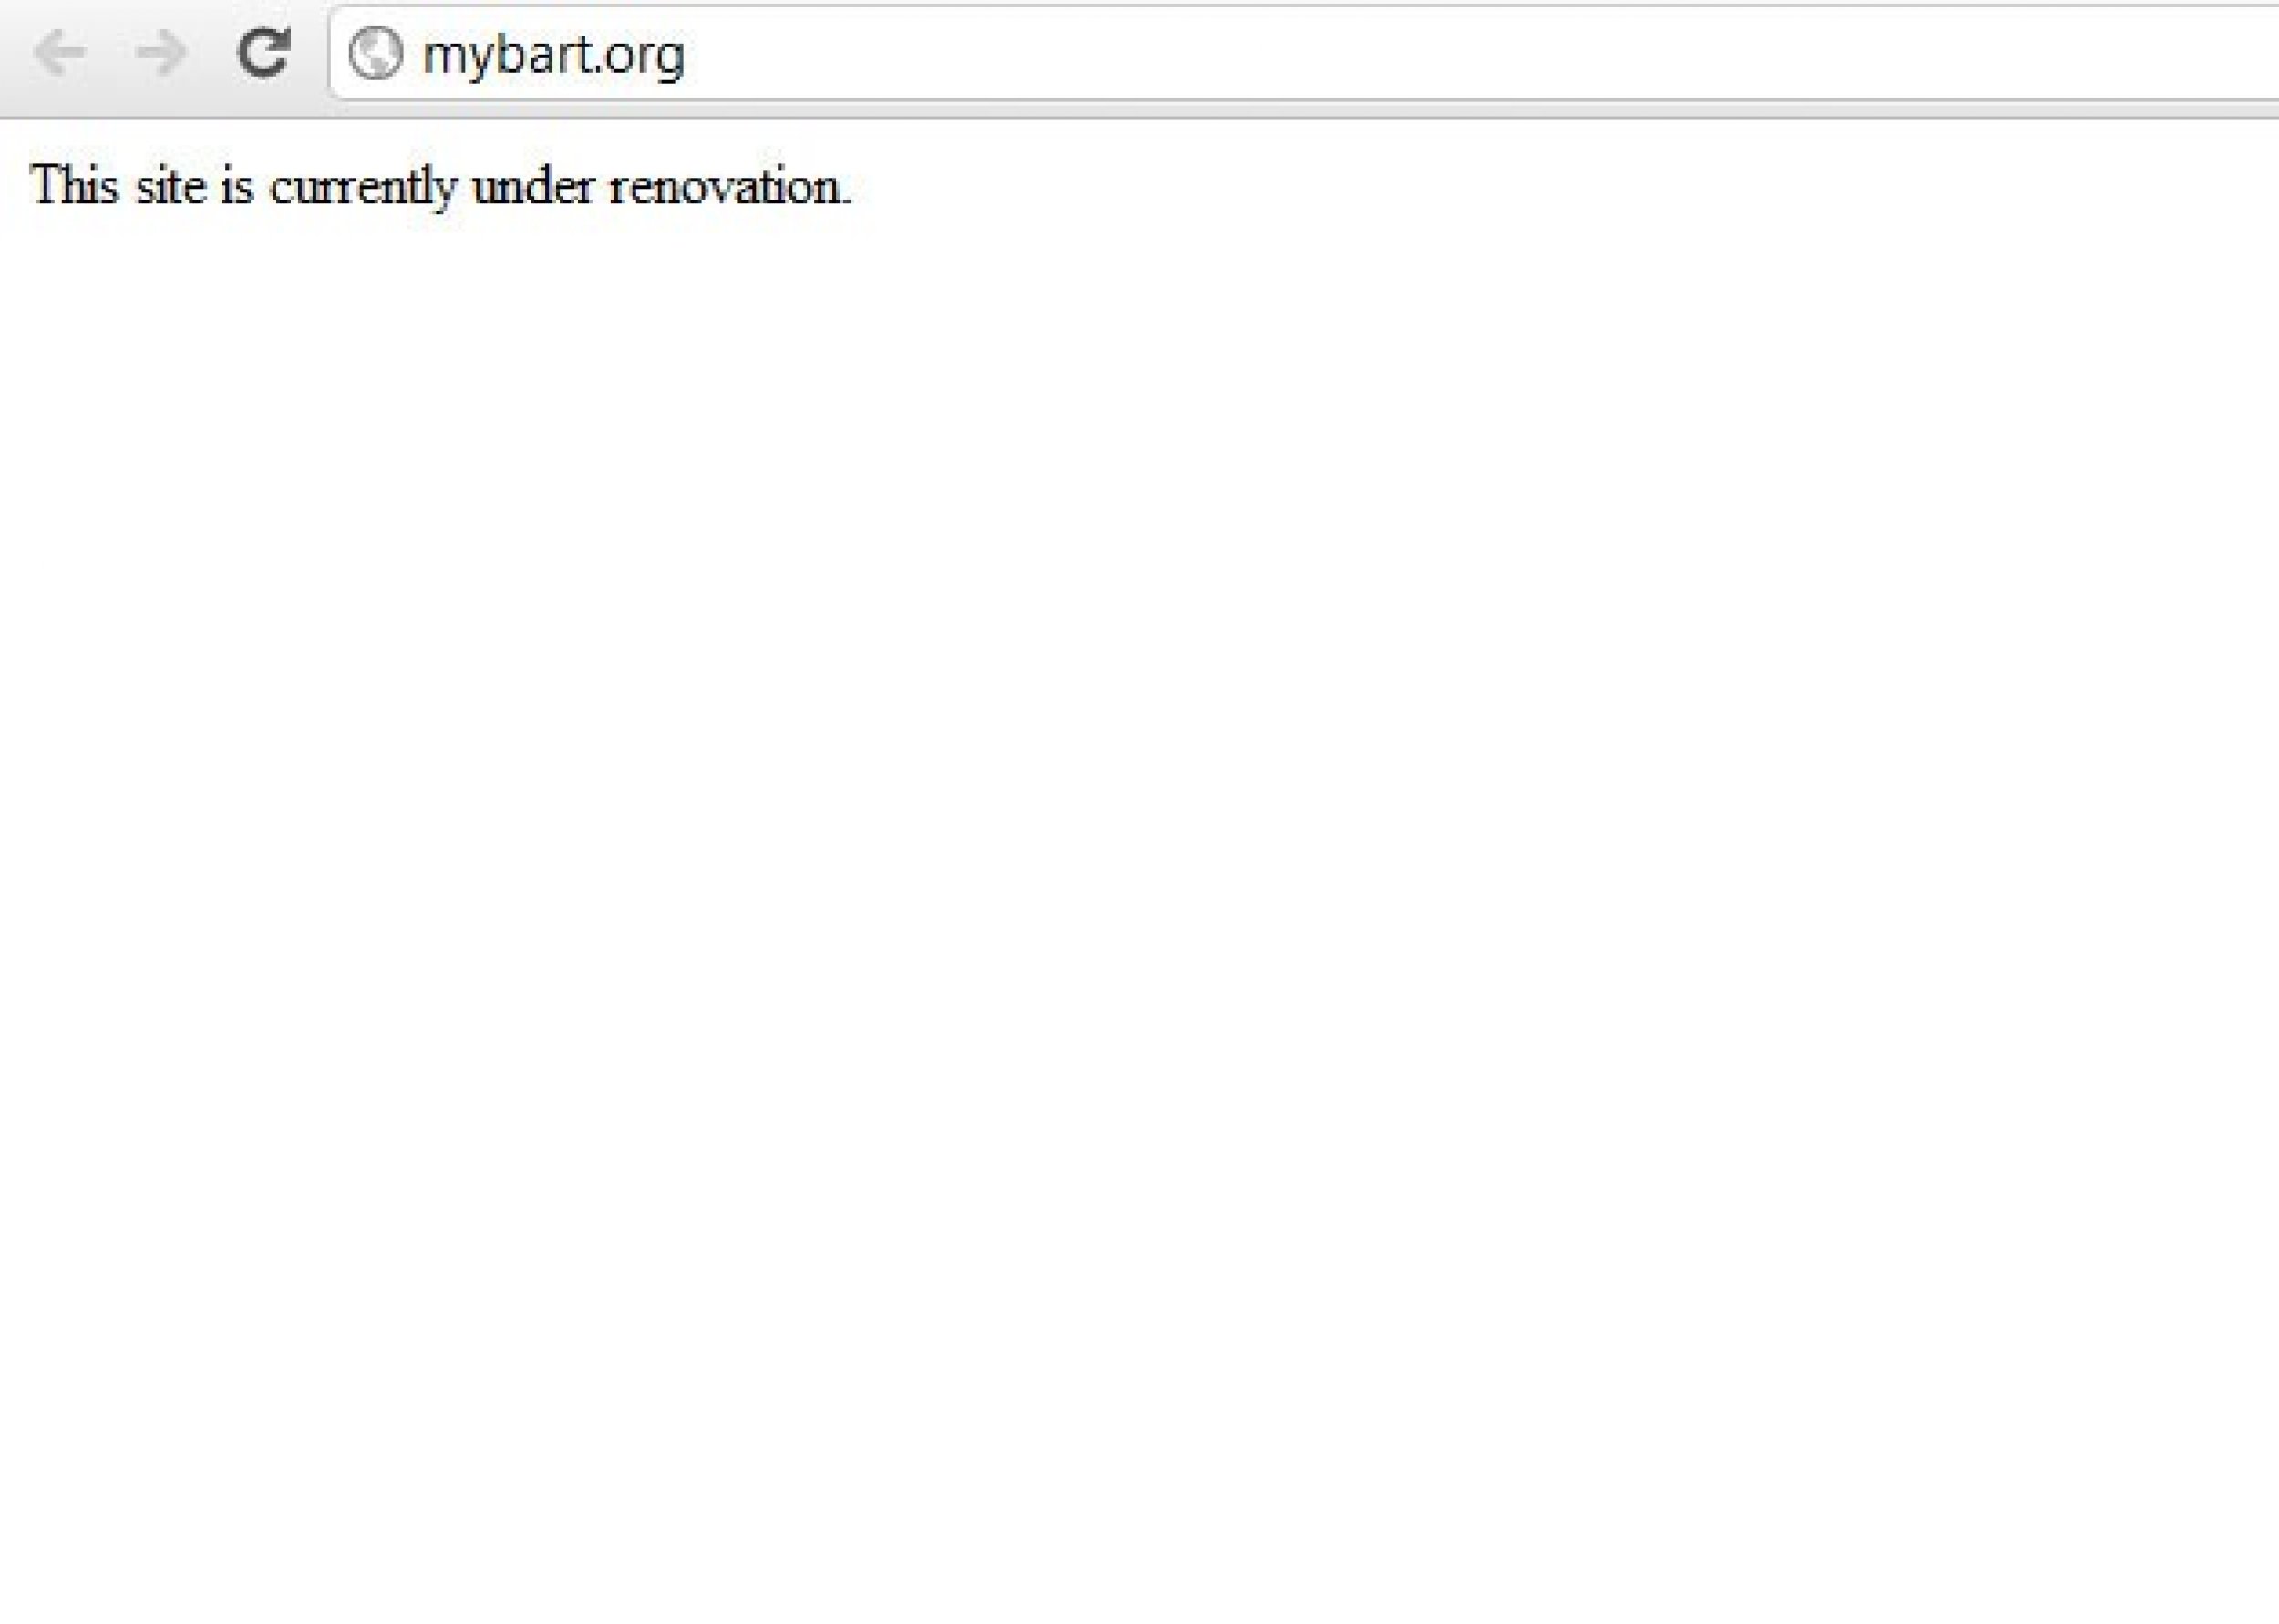 mybart.org has hacked